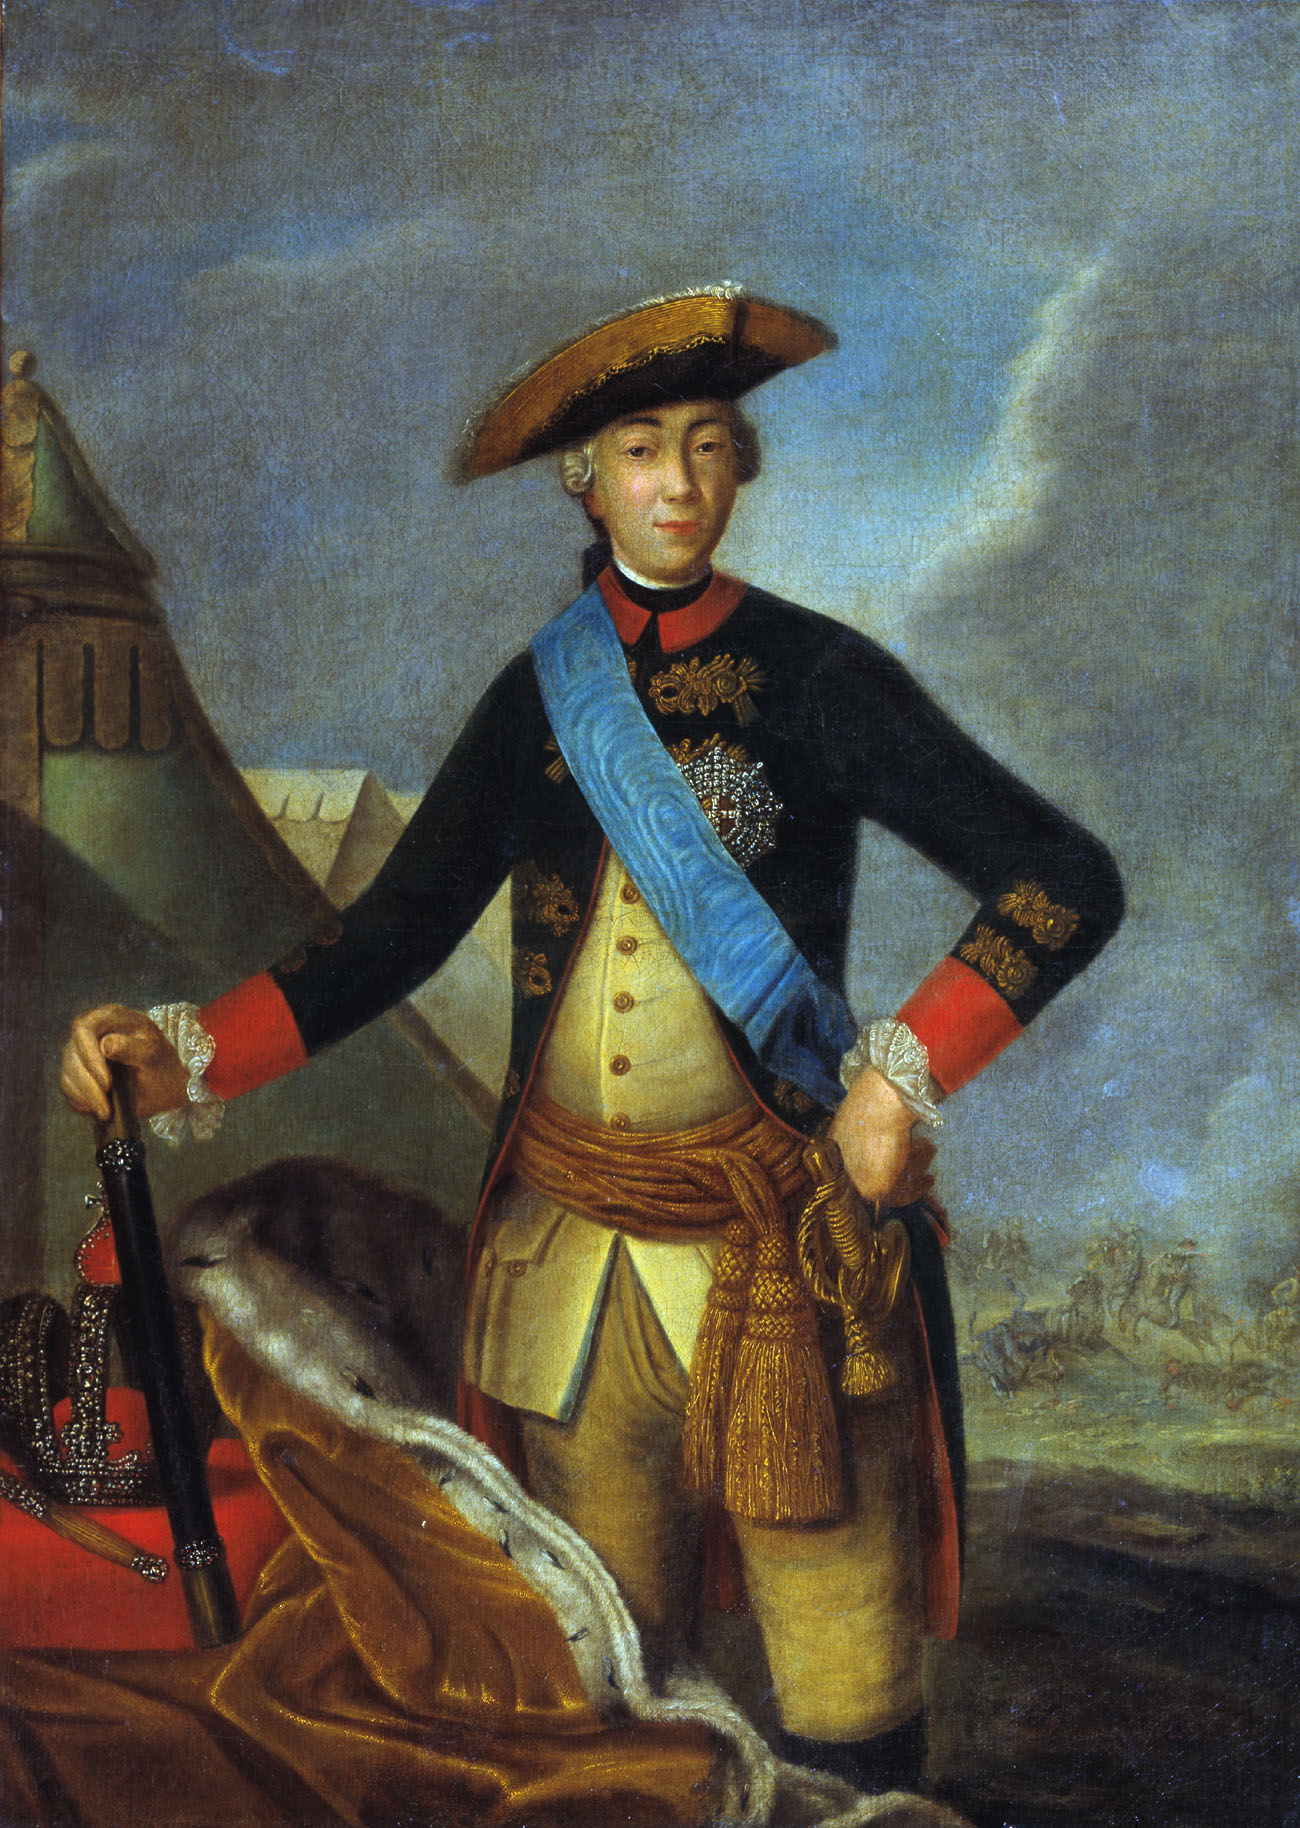 Рокотов. Портрет императора Петра III. 1762